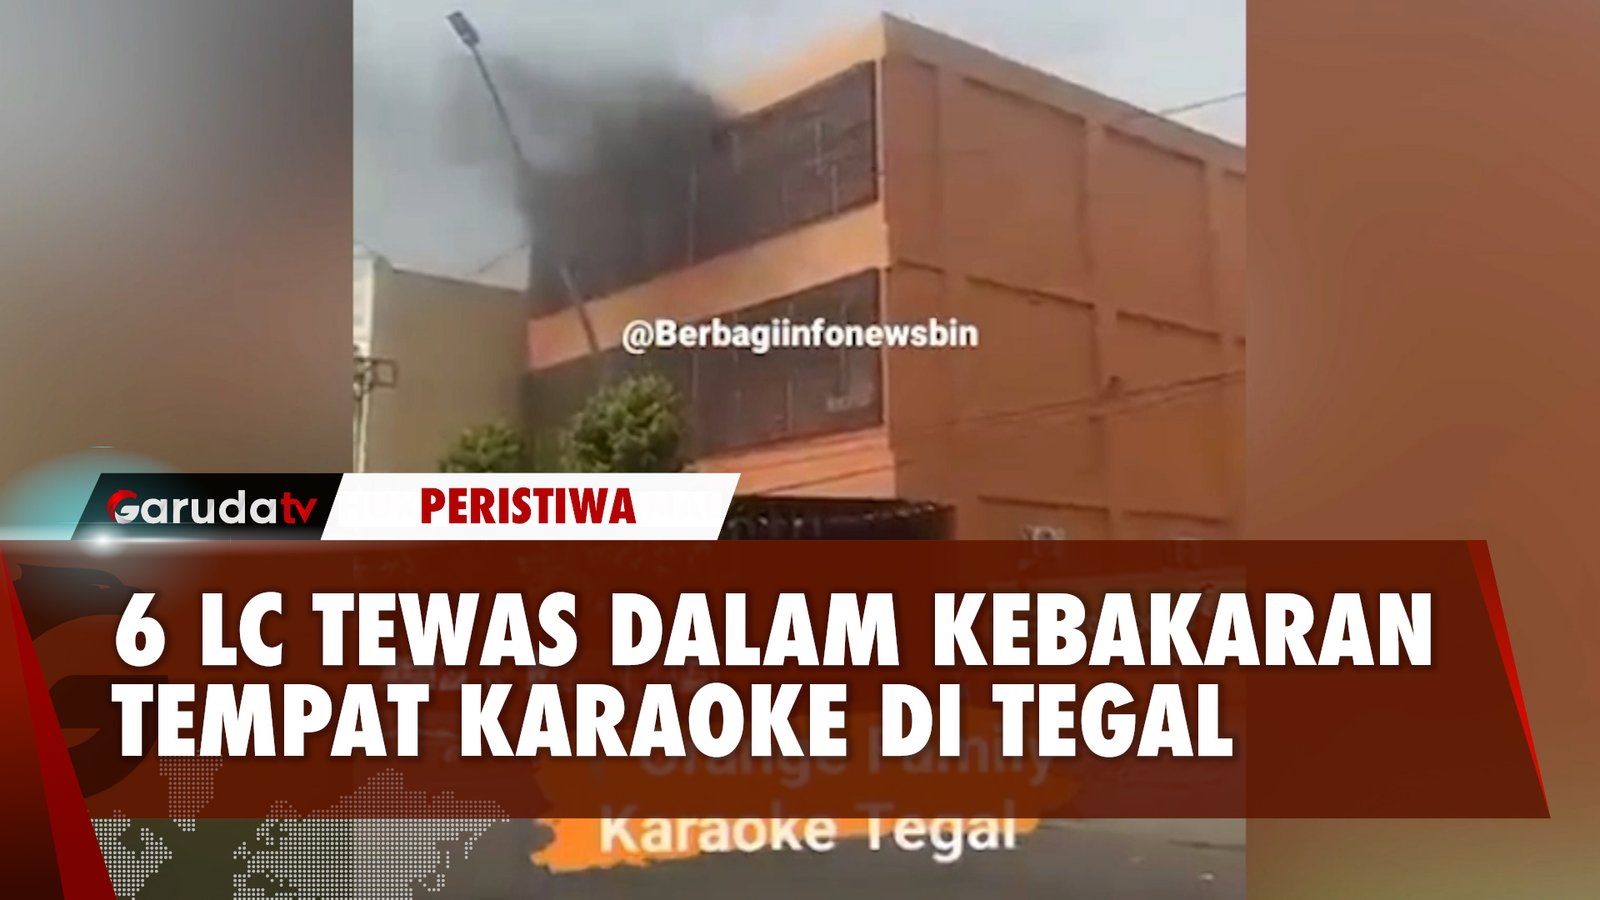 Kebakaran Lahap Tempat Karaoke di Tegal, 6 LC Dinyatakan Tewas!